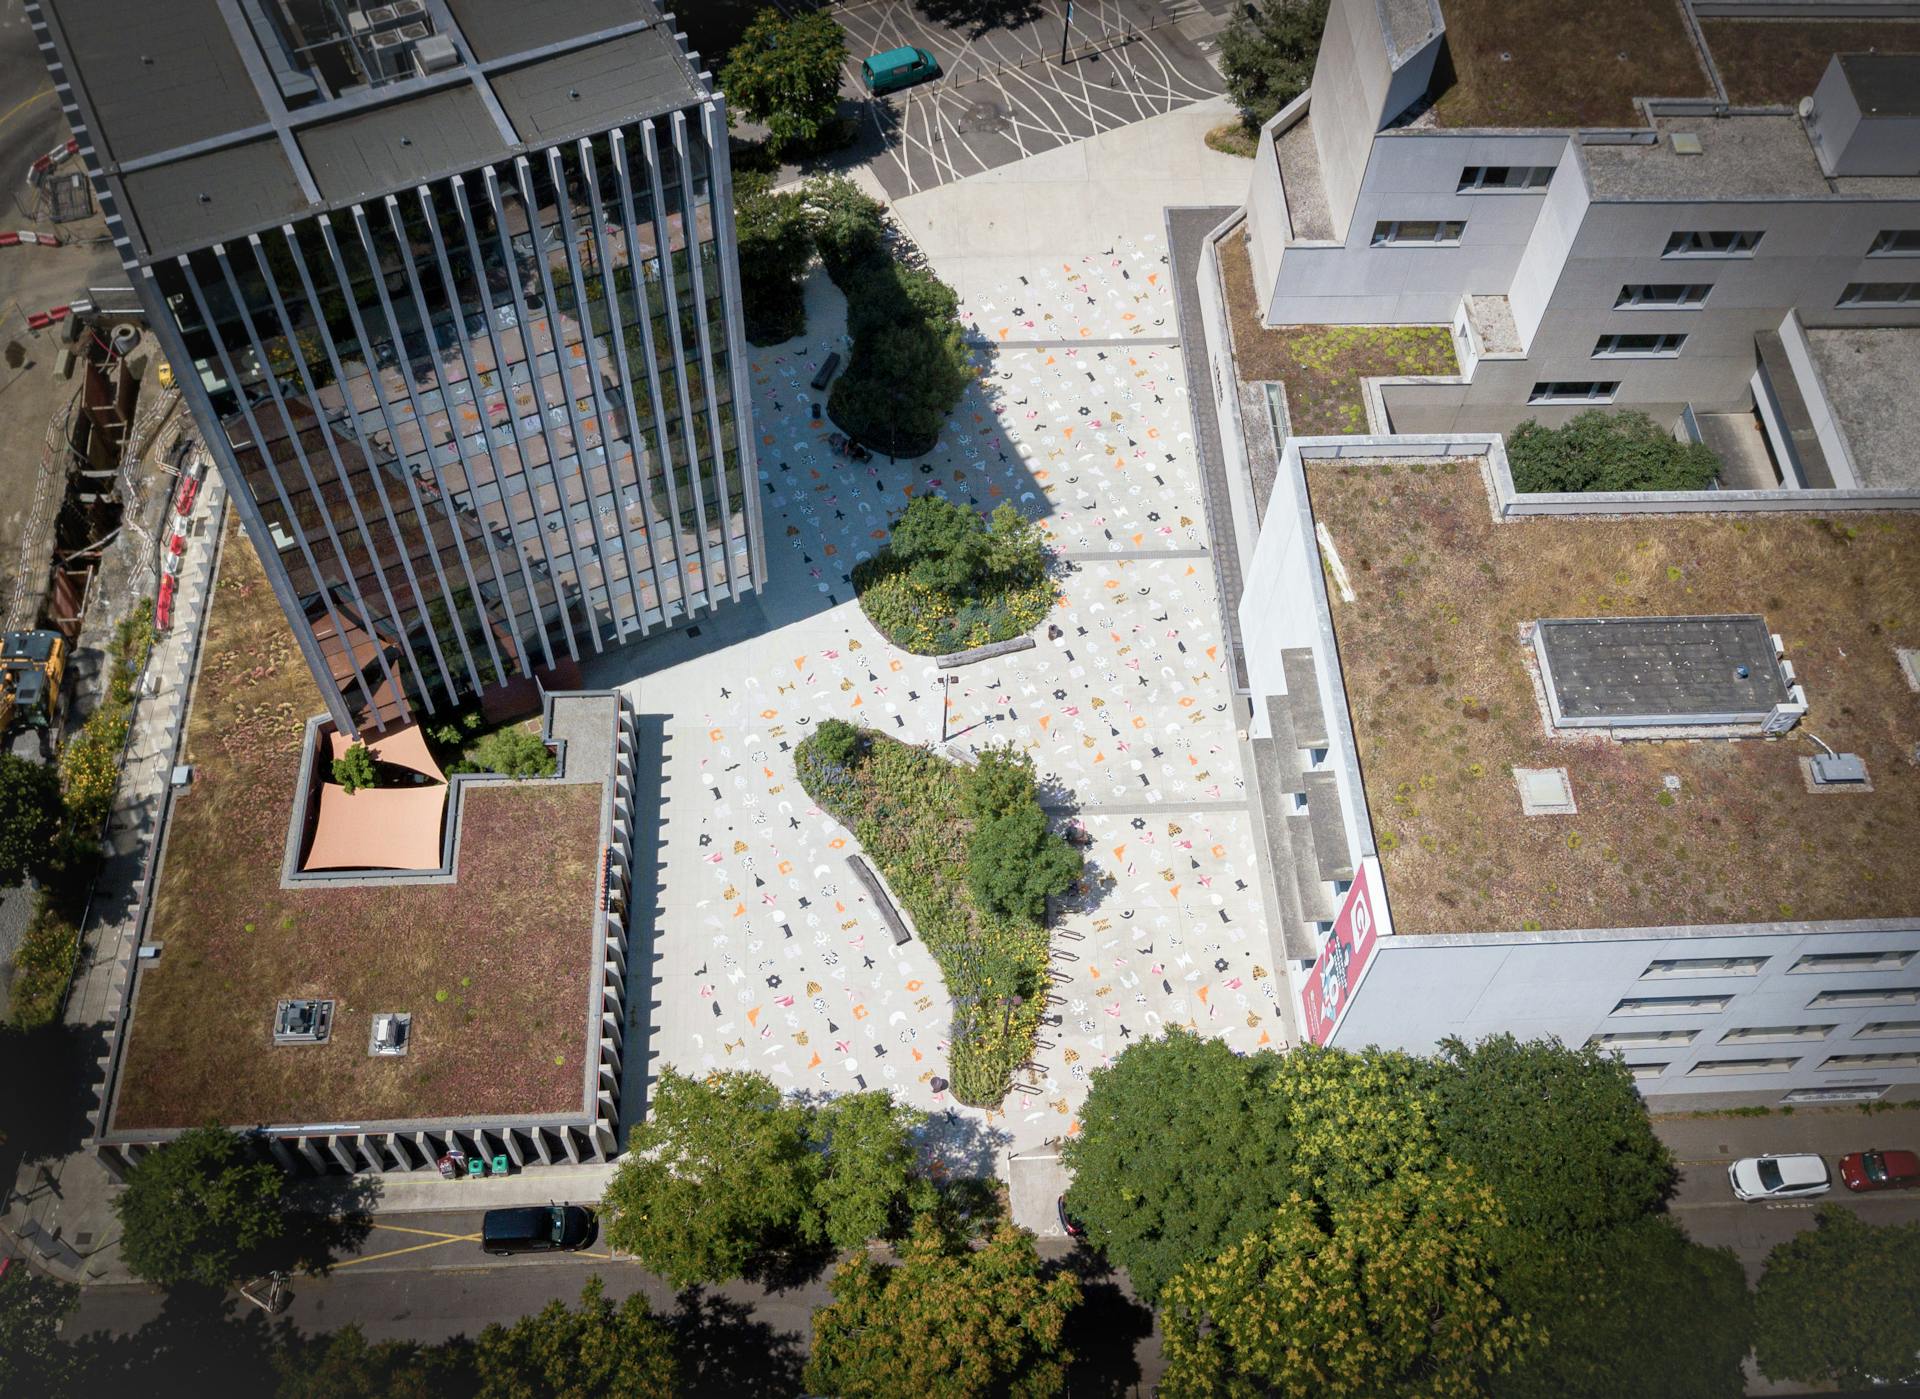 Vue aérienne du projet "le champ des signes" réalisé par Studio Katra en collaboraiton avec le Pôle des Arts Graphiques de la Joliverie et Grafipolis pour l'édition 2023 du Voyage à Nantes.